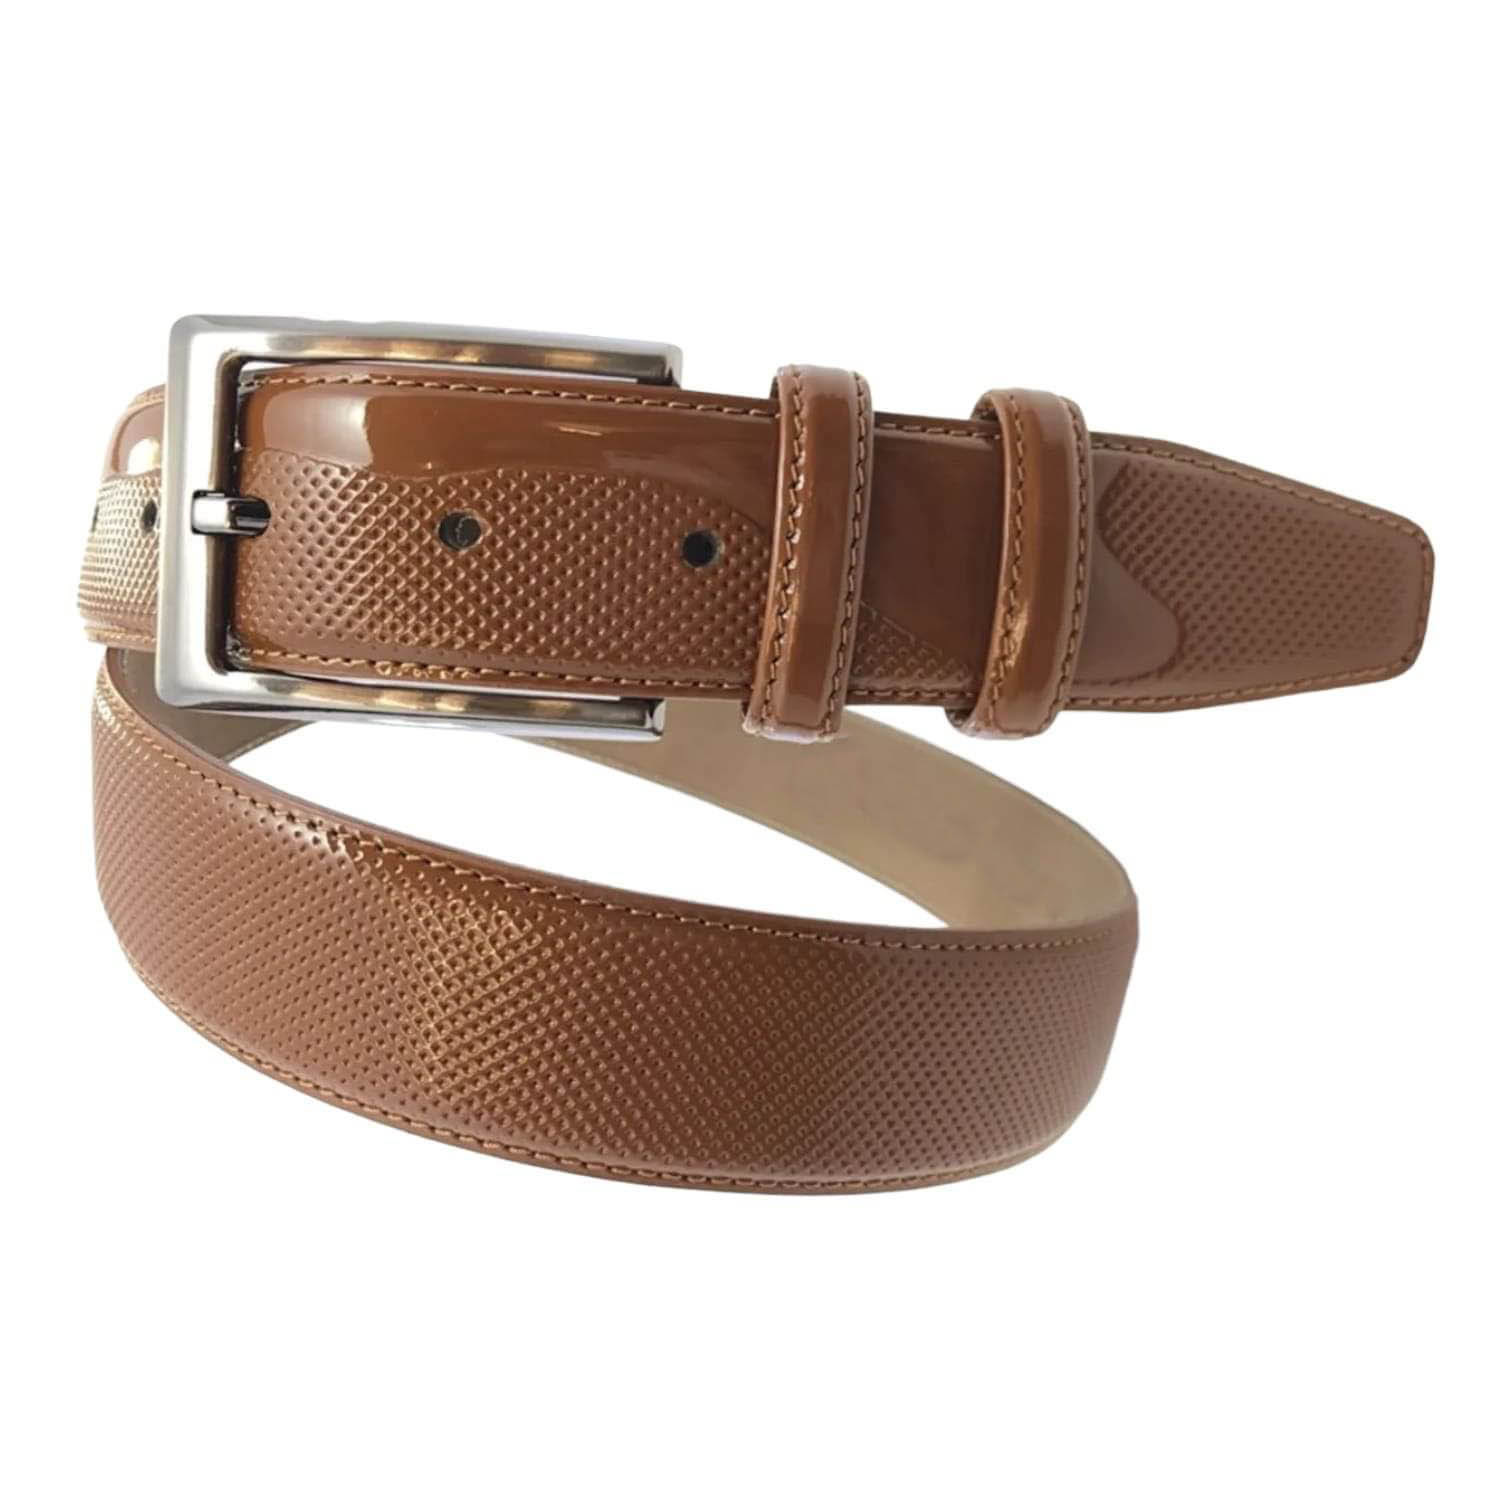 Capo Pelle Men's Light Tan Italian Leather Belt